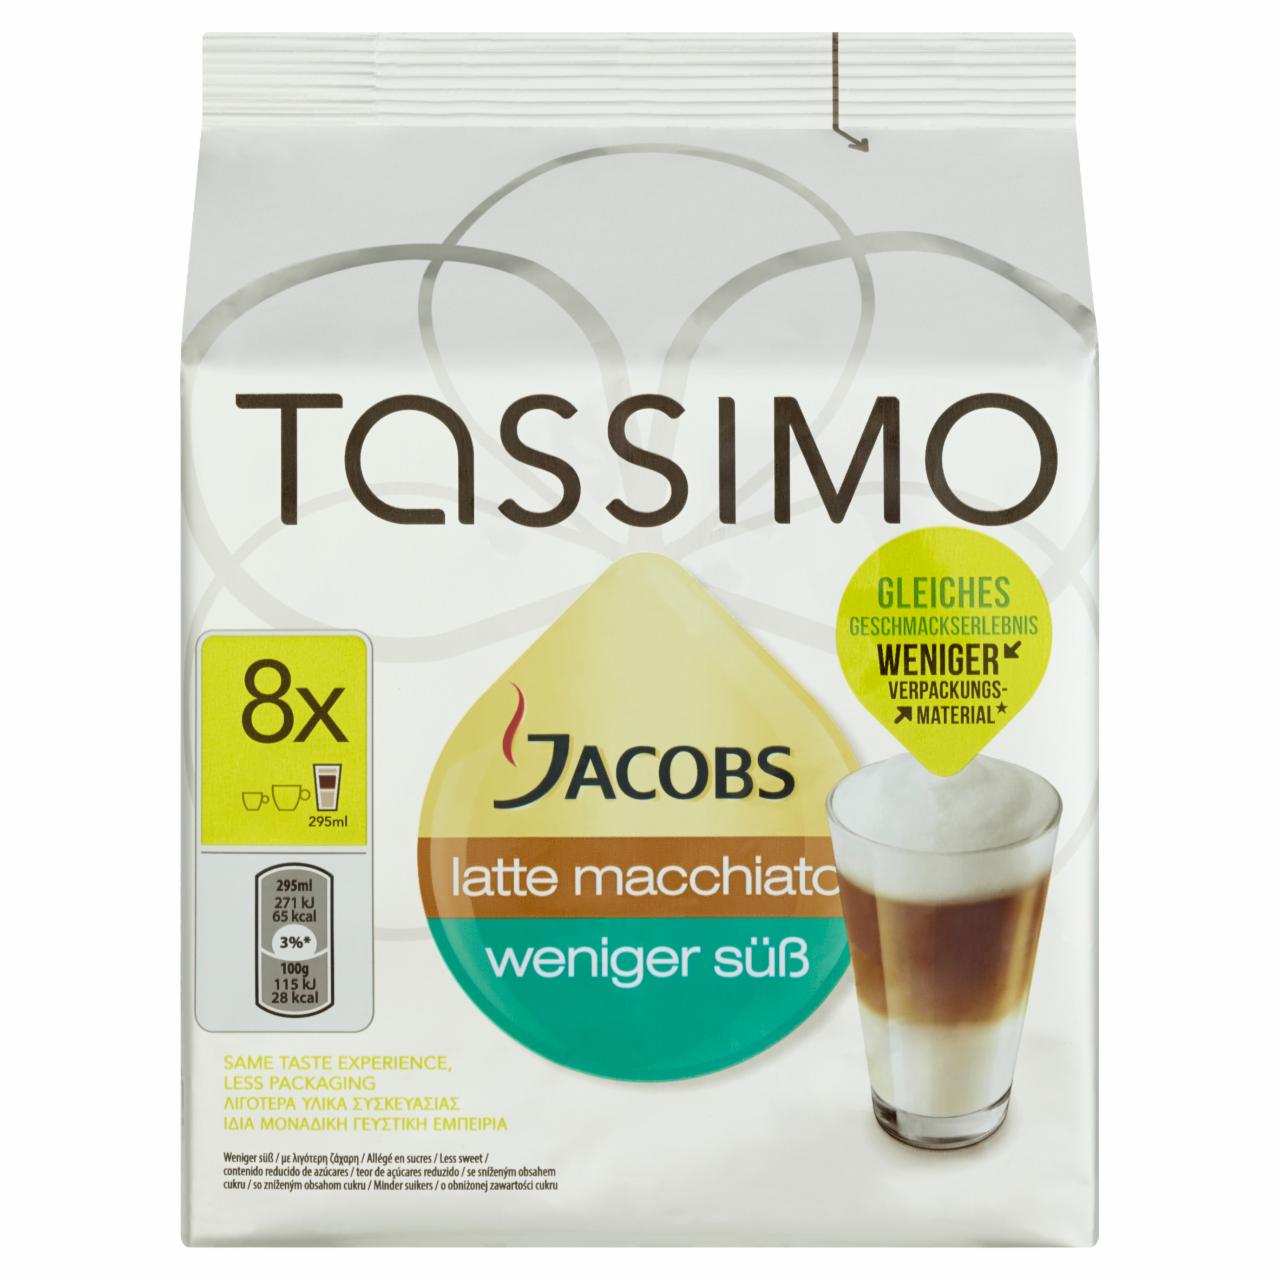 Zdjęcia - Tassimo Jacobs Latte Macchiato Kawa mielona 8 kapsułek i koncentrat mleka 8 kapsułek 236 g